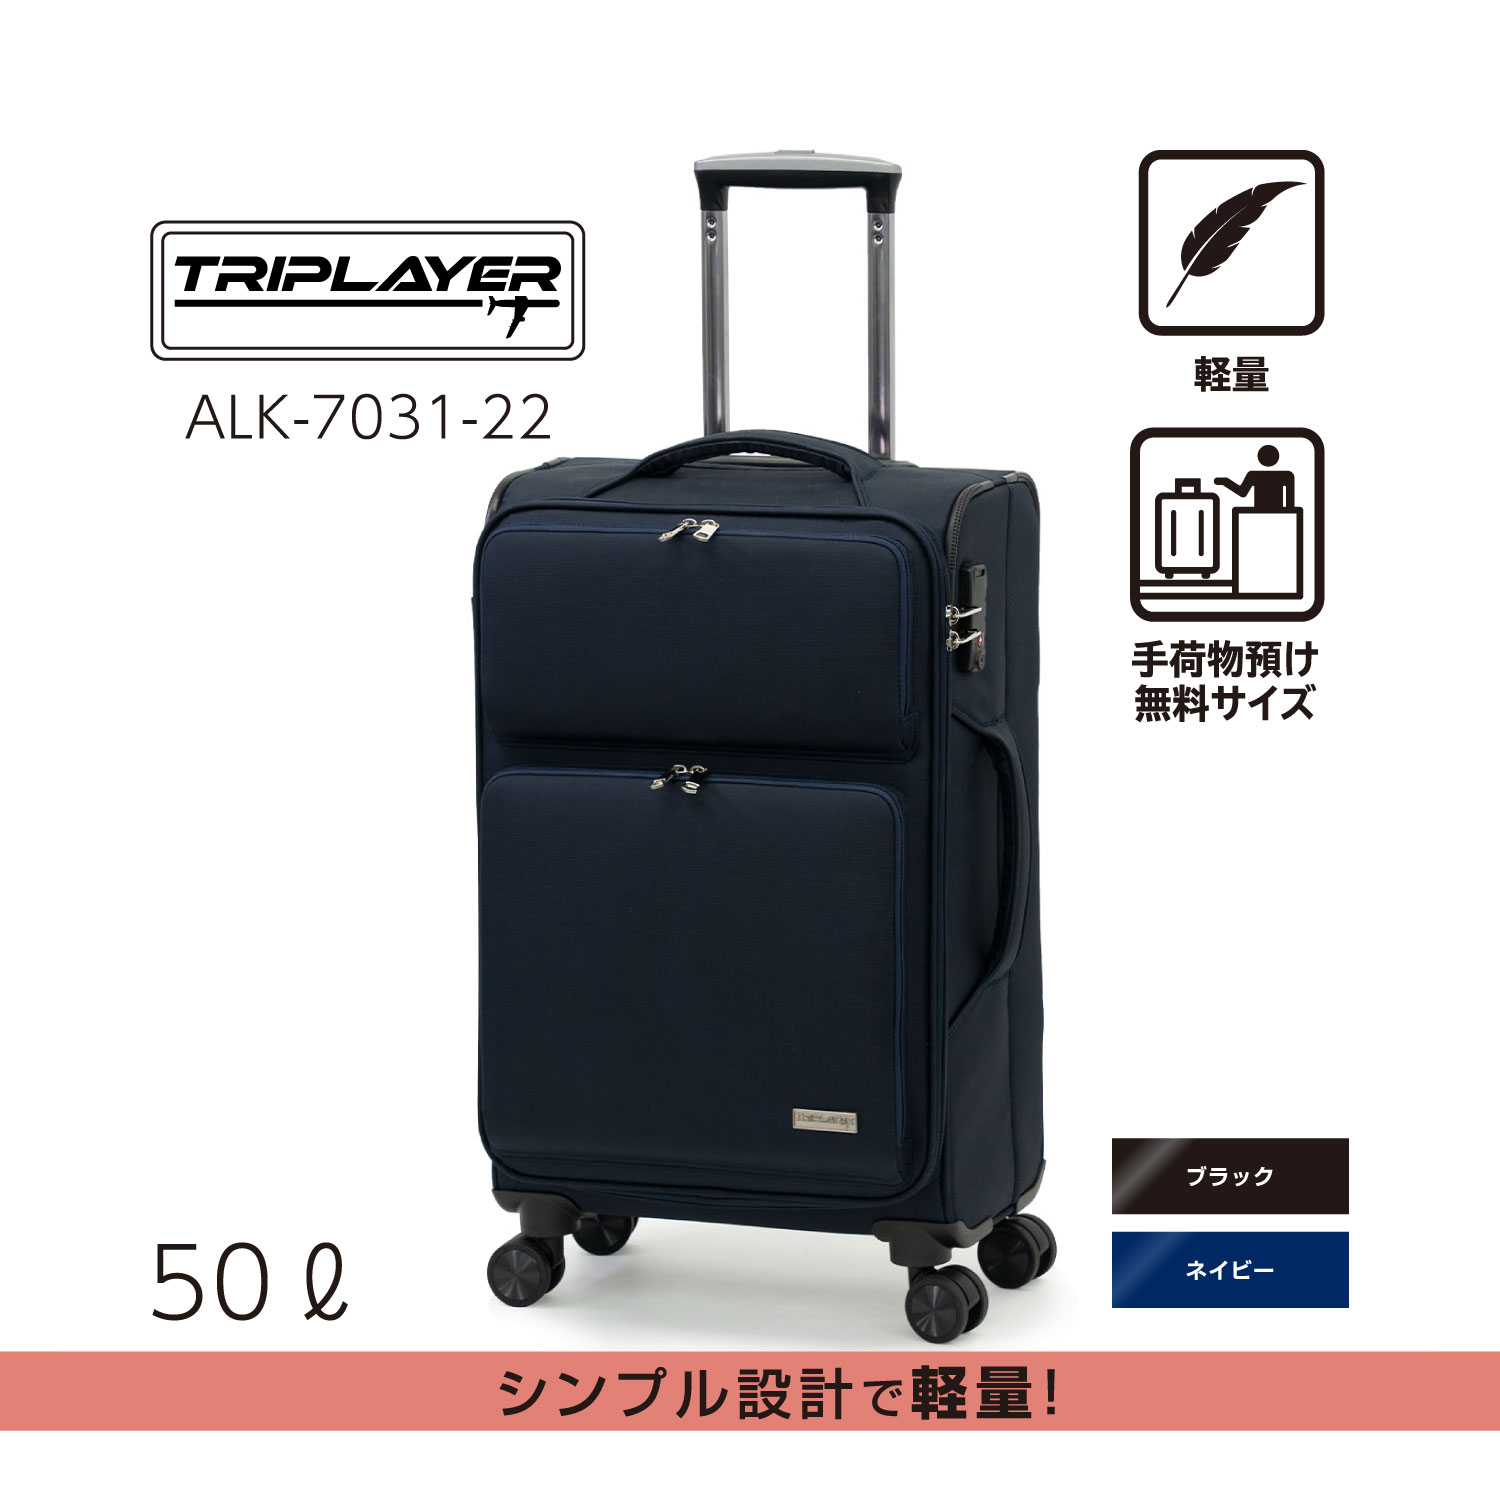 ネイビー | アジア・ラゲージ 公式サイト | Asia Luggage Inc.